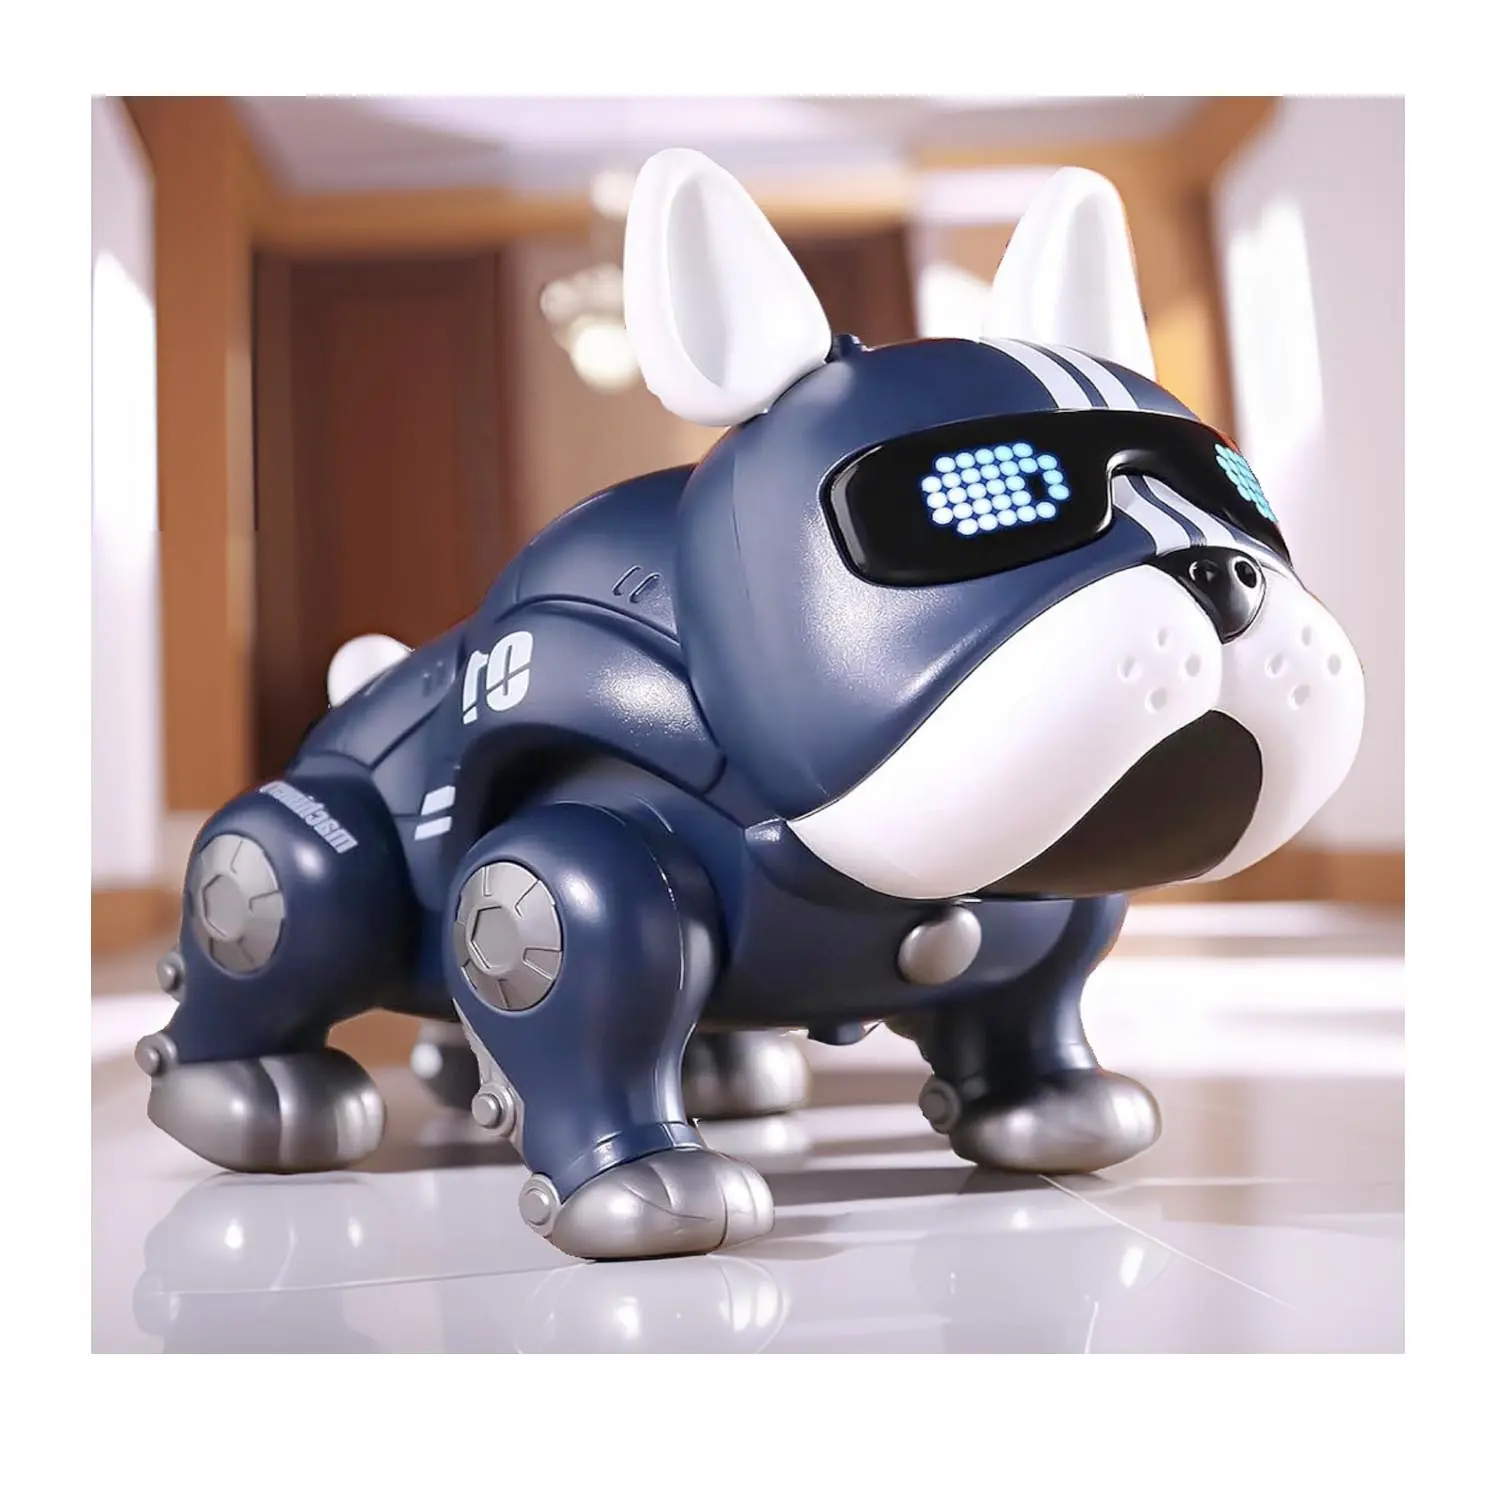 NEUES intelligentes intelligentes HUNDE ROBOT-Spielzeug mit LED-LICHTVERKLICHTE und TOCK, elektrisch tanzendes Haustier-Spielzeug Hund-Geschenk gefällt einem echten Hund, Roboter-Welpen-Hund